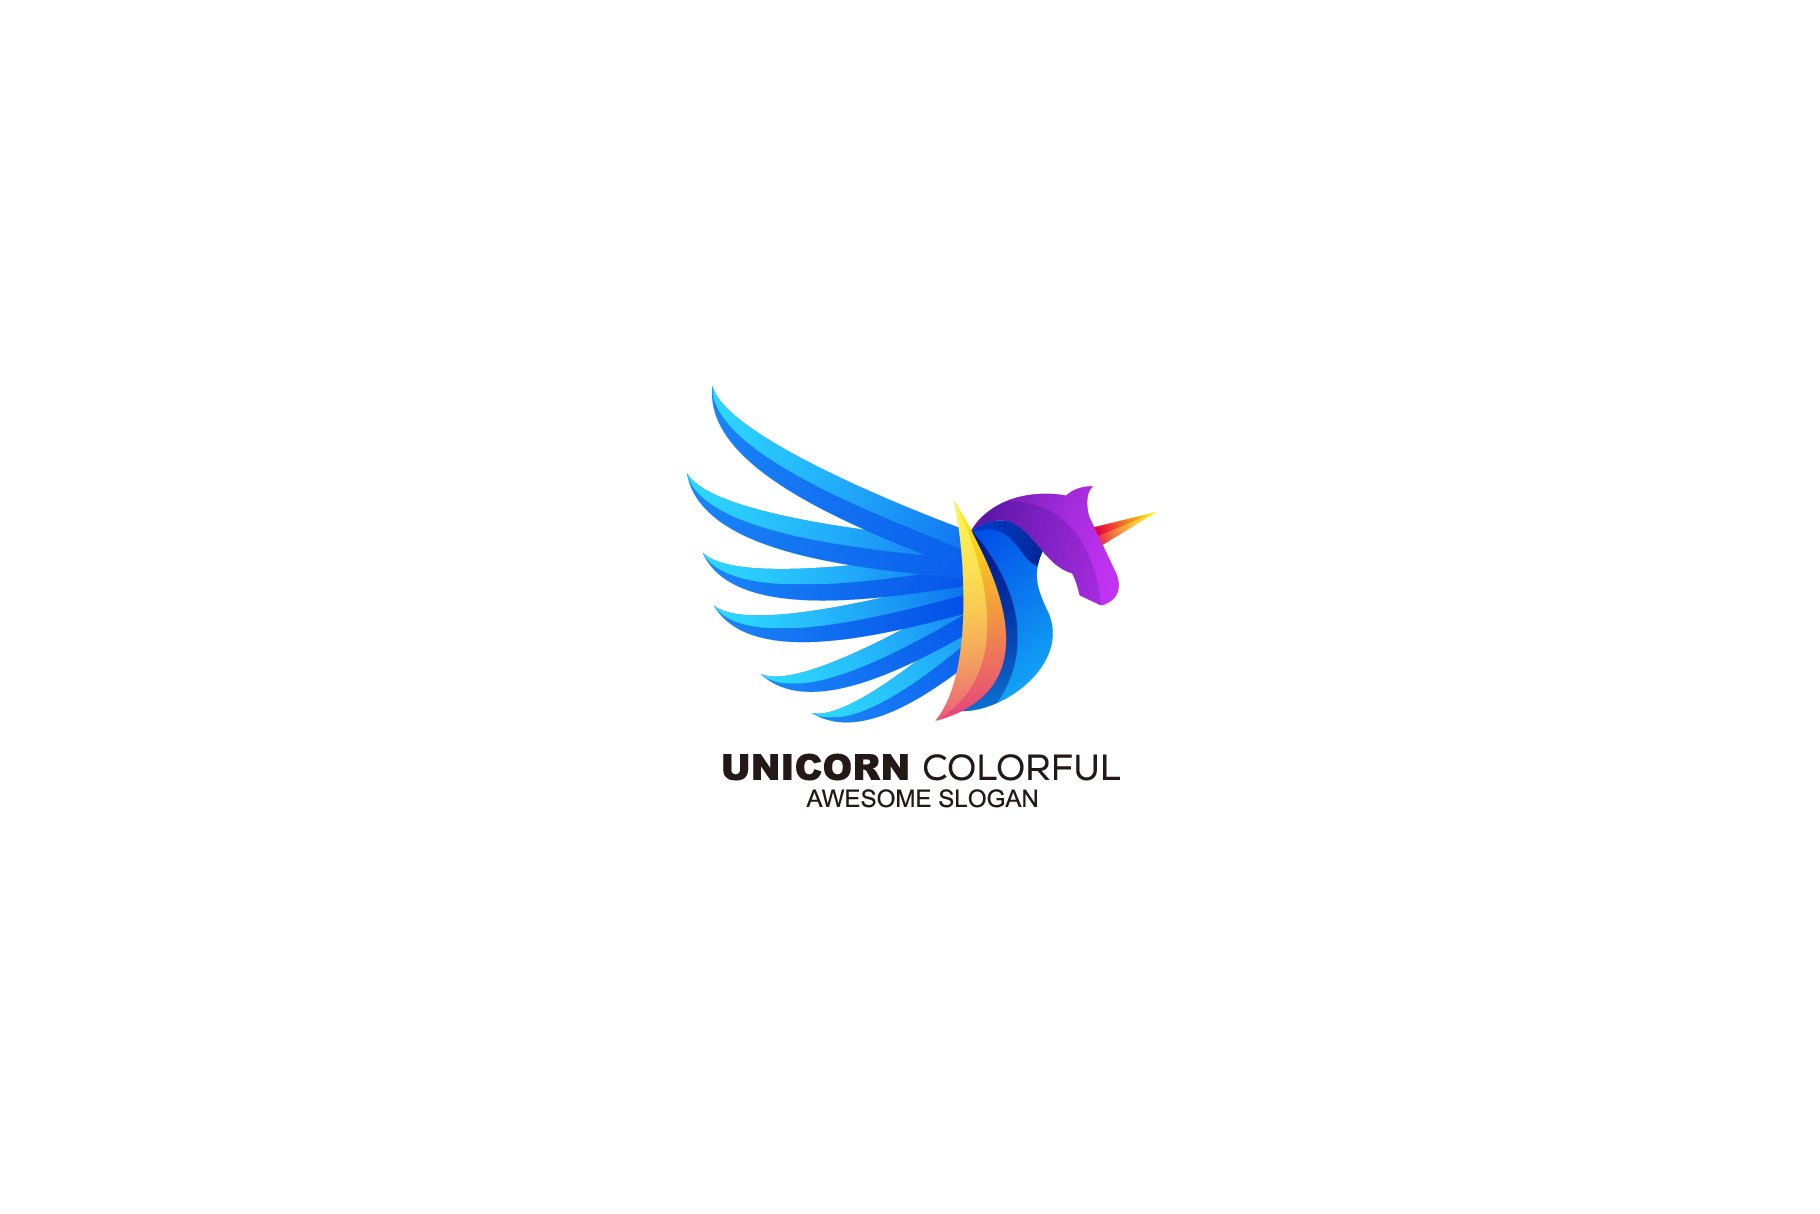 unicorn colorful logo vector design cover image.